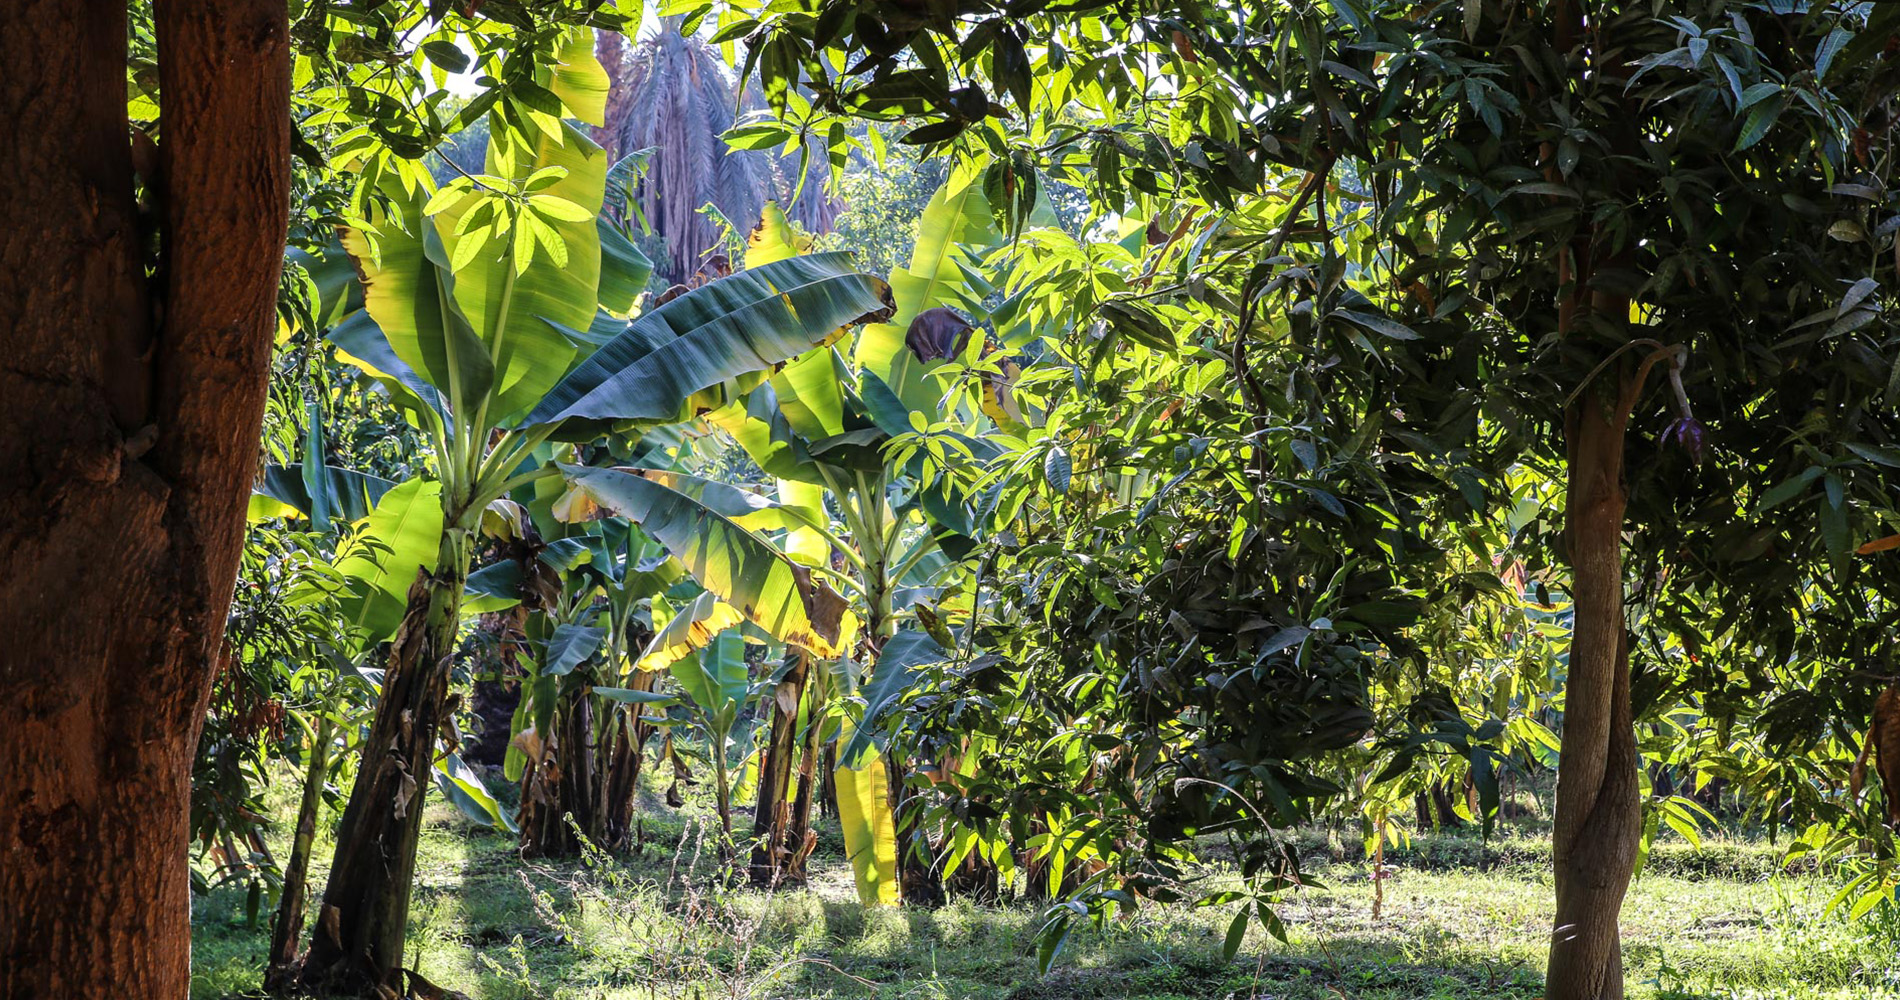 Bananiers et manguiers donnent de l’ombre aux cultures sous-jacentes